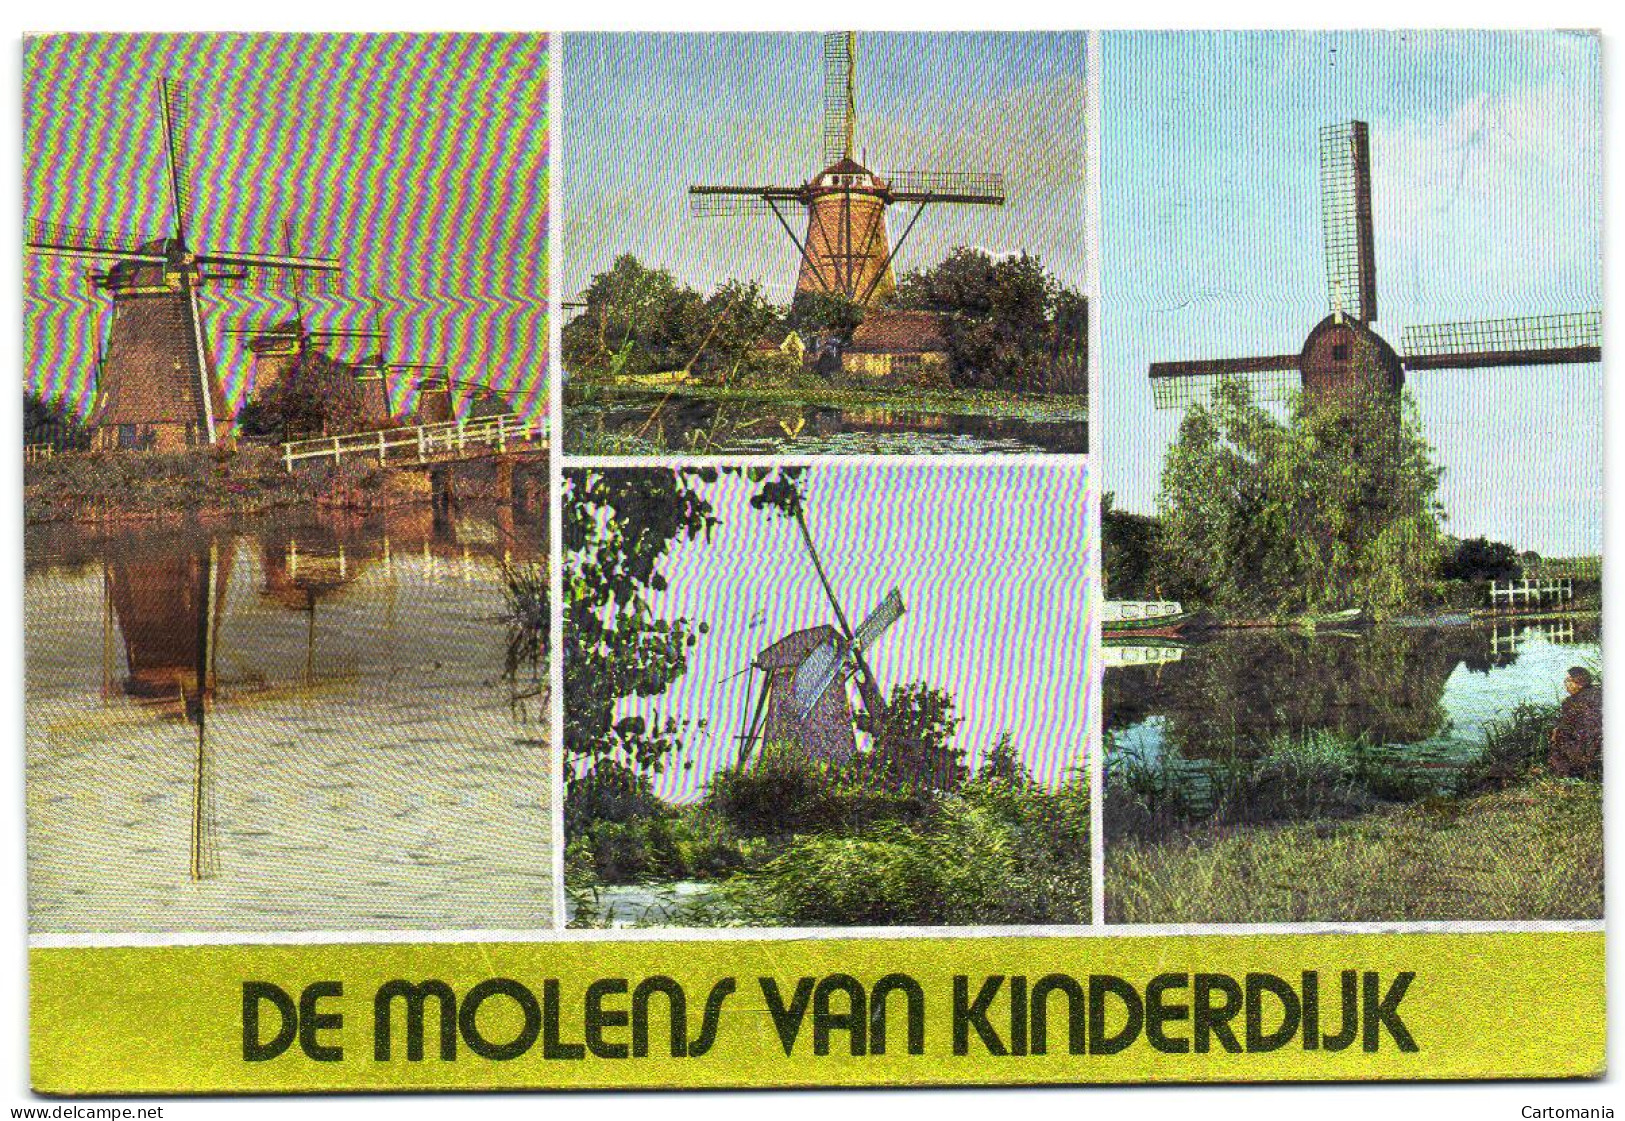 De Molens Van Kinderdijk - Kinderdijk